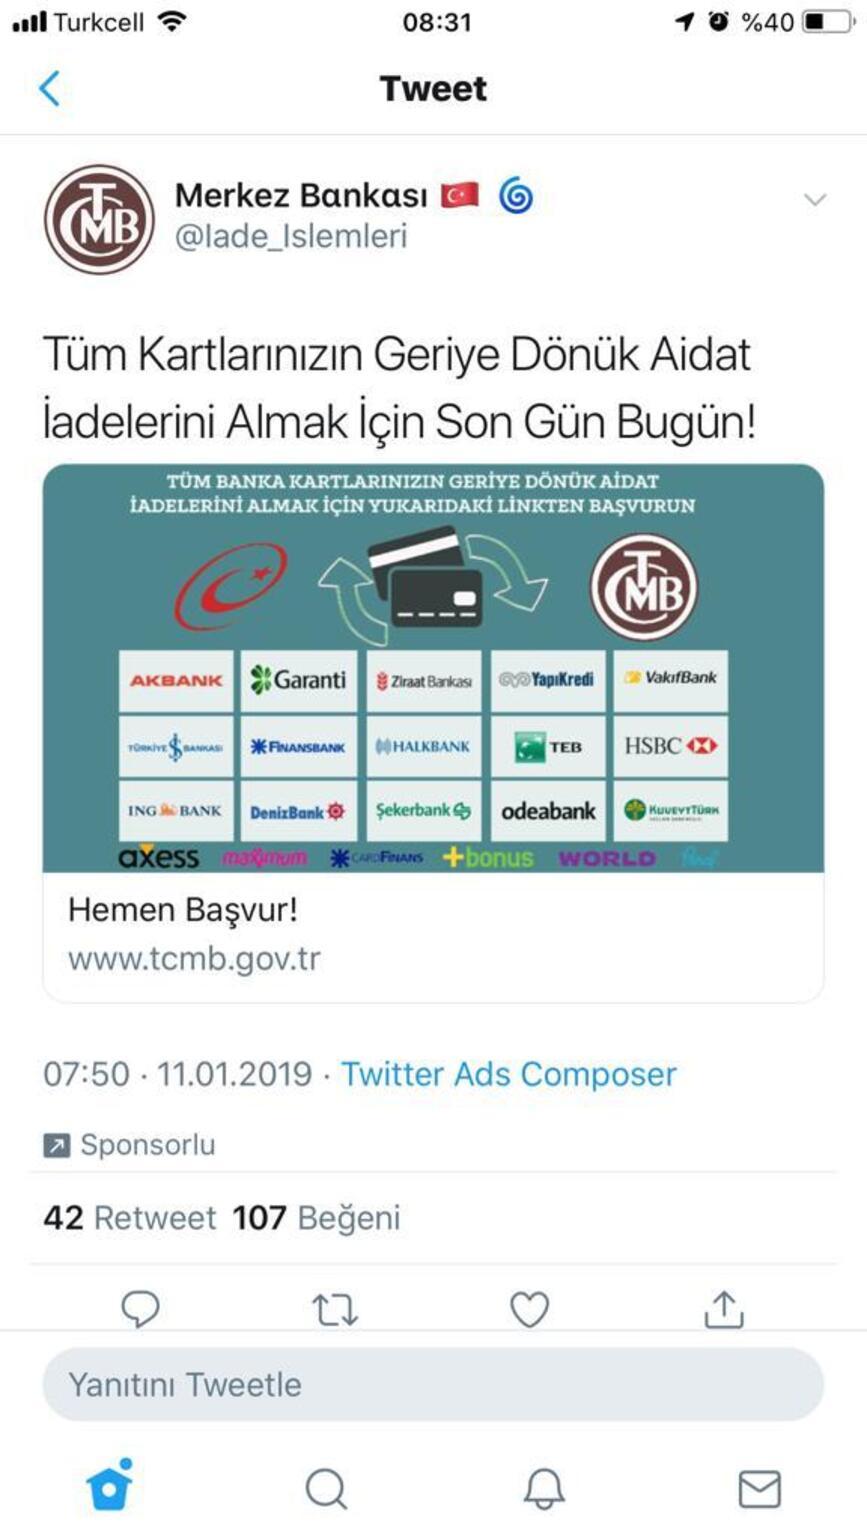 Bilişim Derneği Başkanı uyardı… Twitter’daki sahte merkez bankası reklamına dikkat